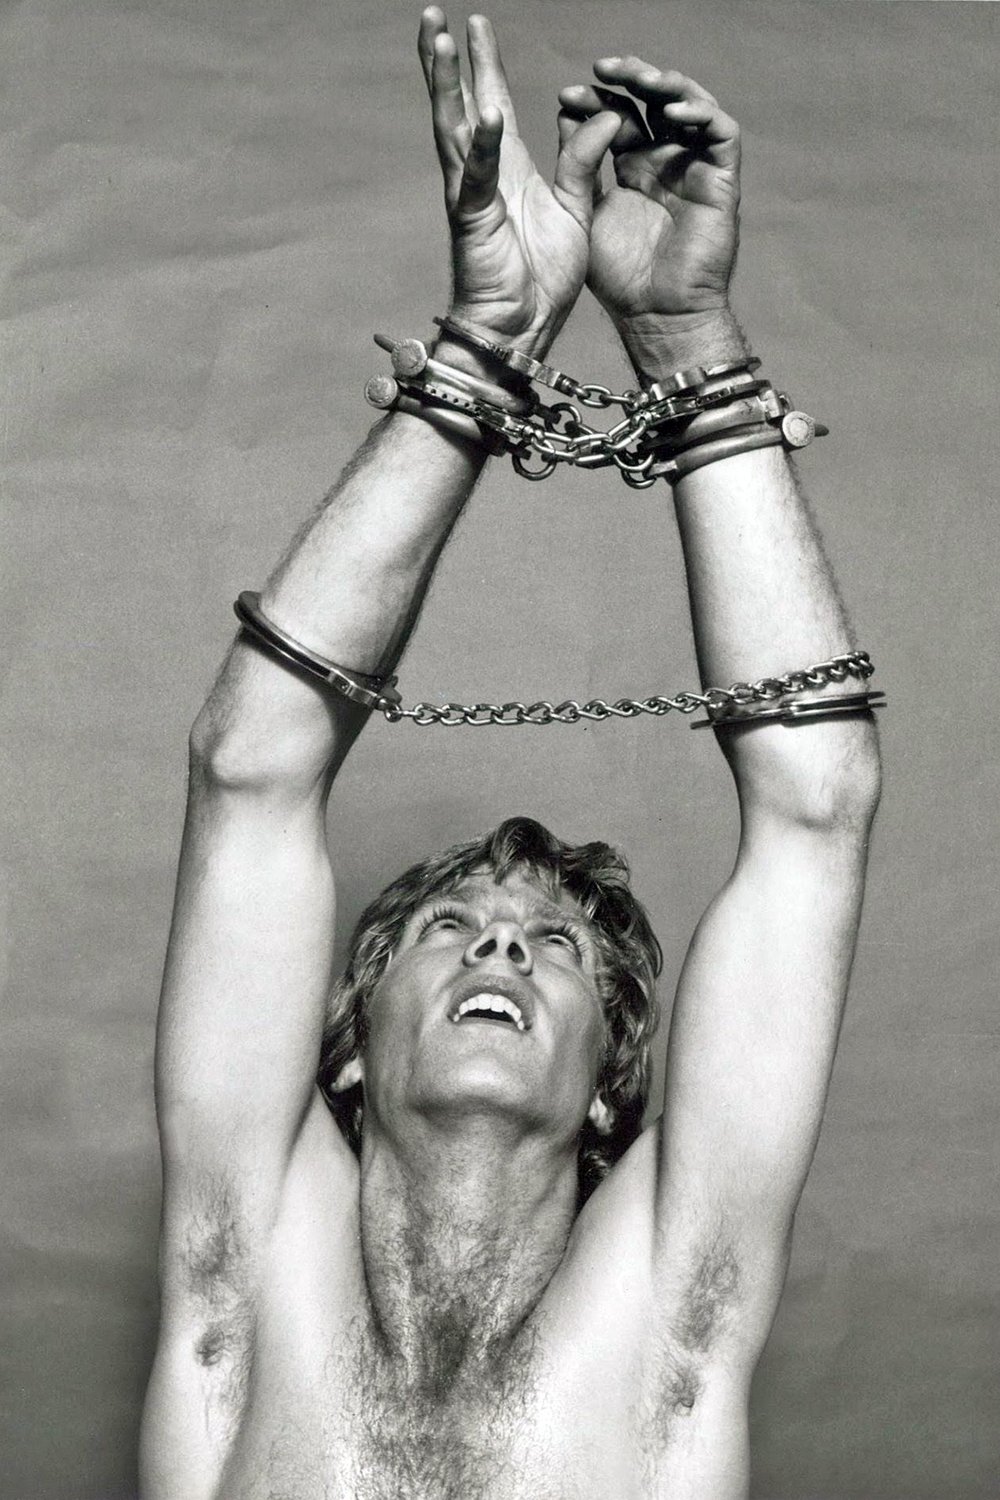 1982 handcuffs hairy chest.jpg